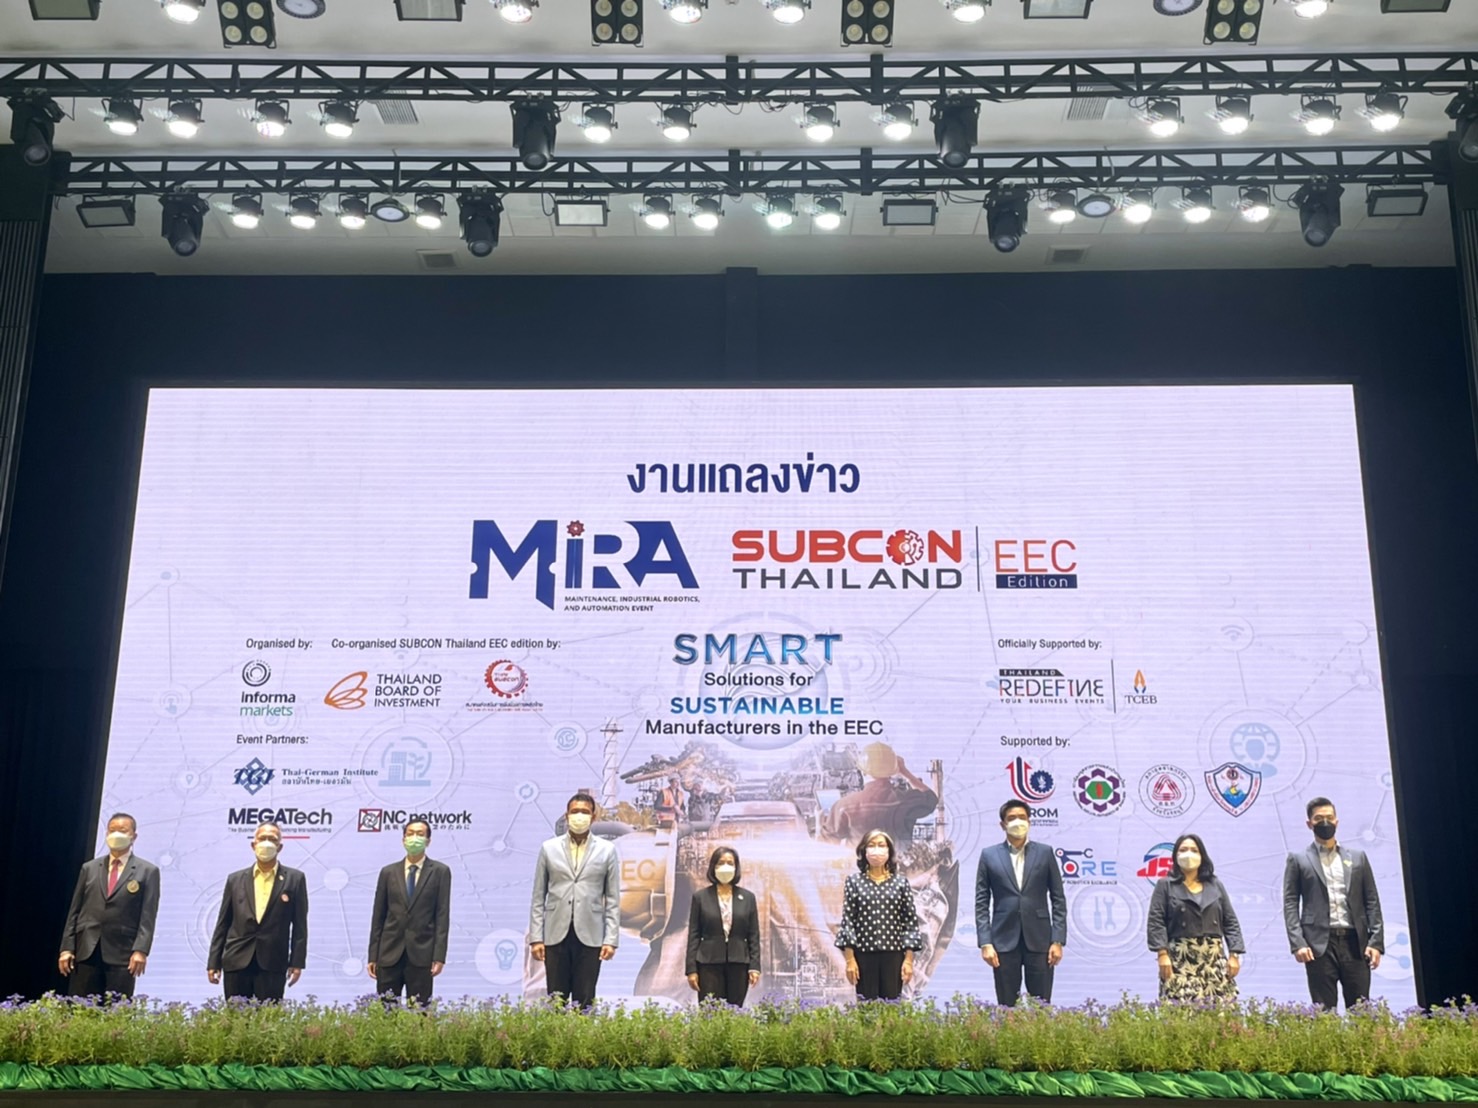 งานแถลงข่าวเปิดตัวงาน Maintenance, Industrial Robotics, and Automation (MIRA) และ Subcon Thailand EEC Edition